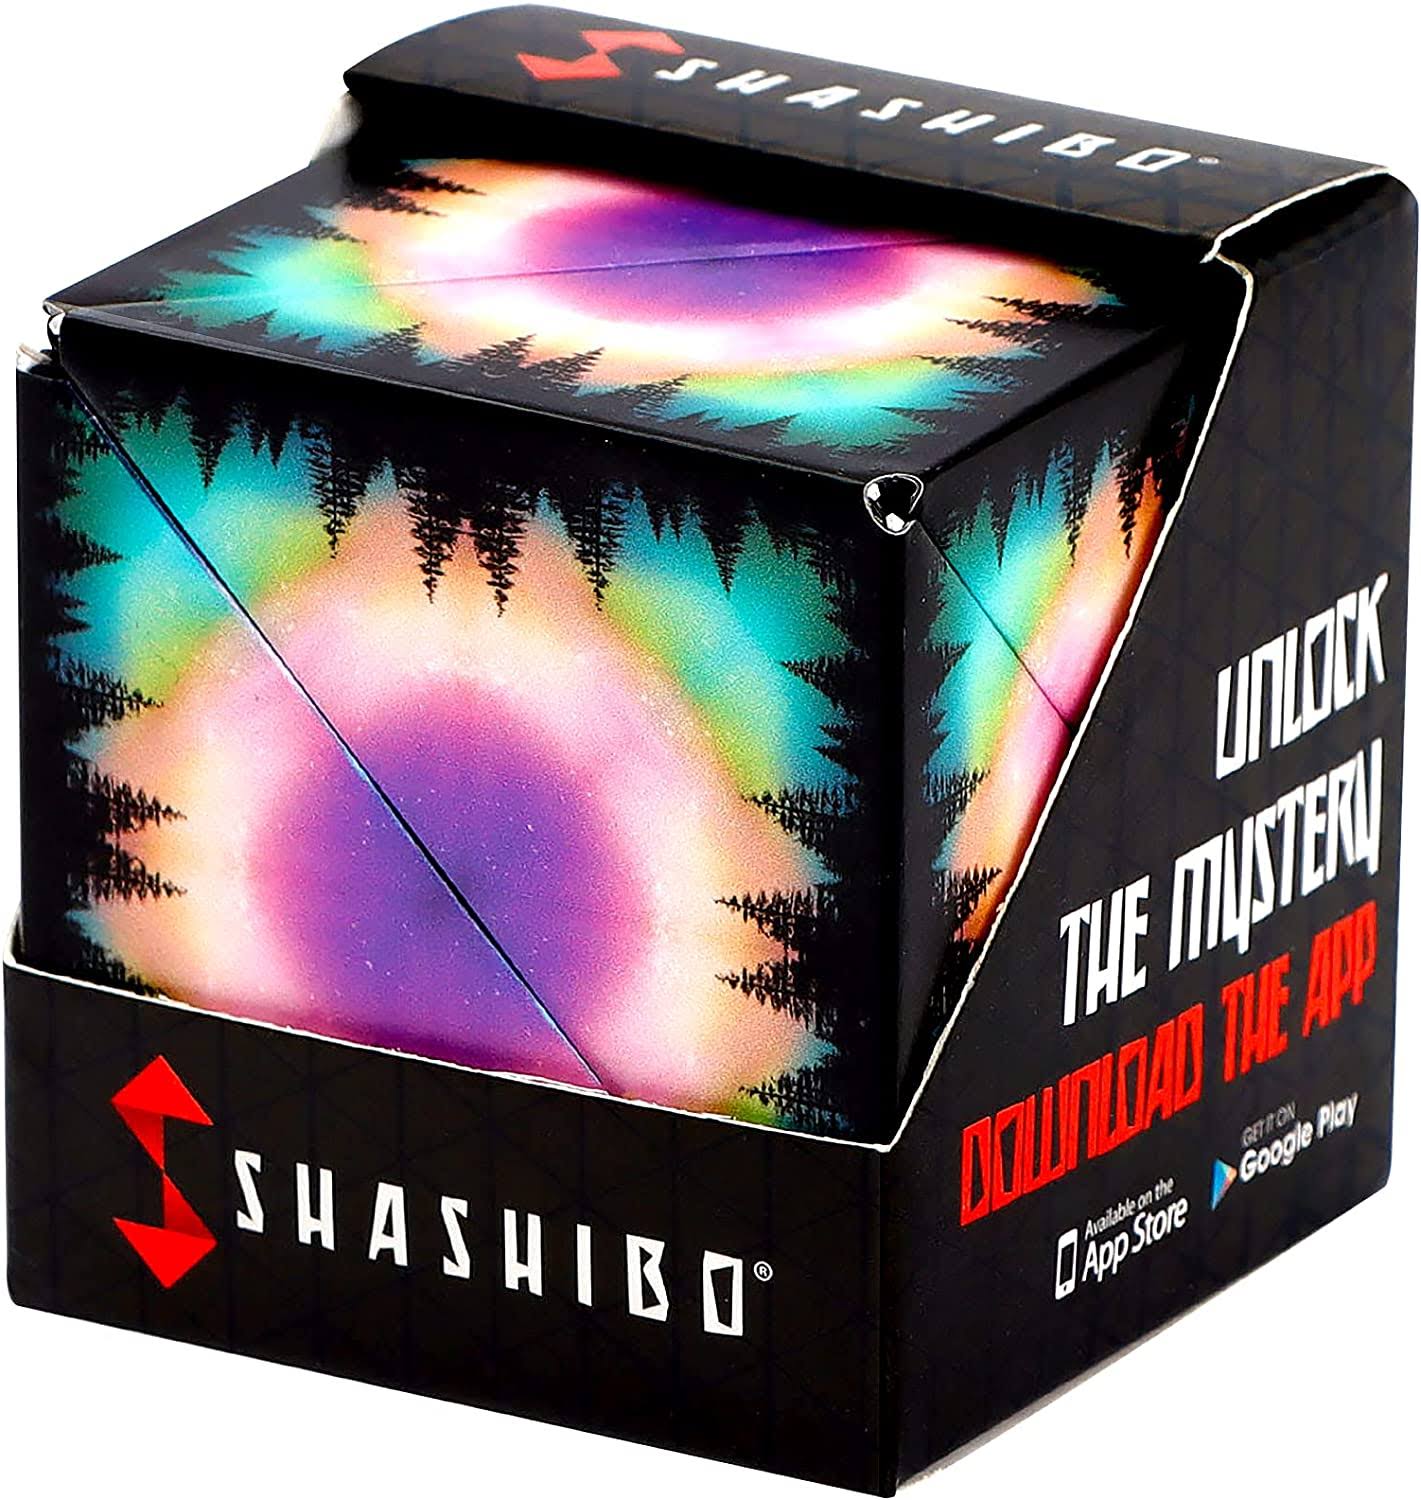 Shashibo Magnetic Puzzle Moon - each